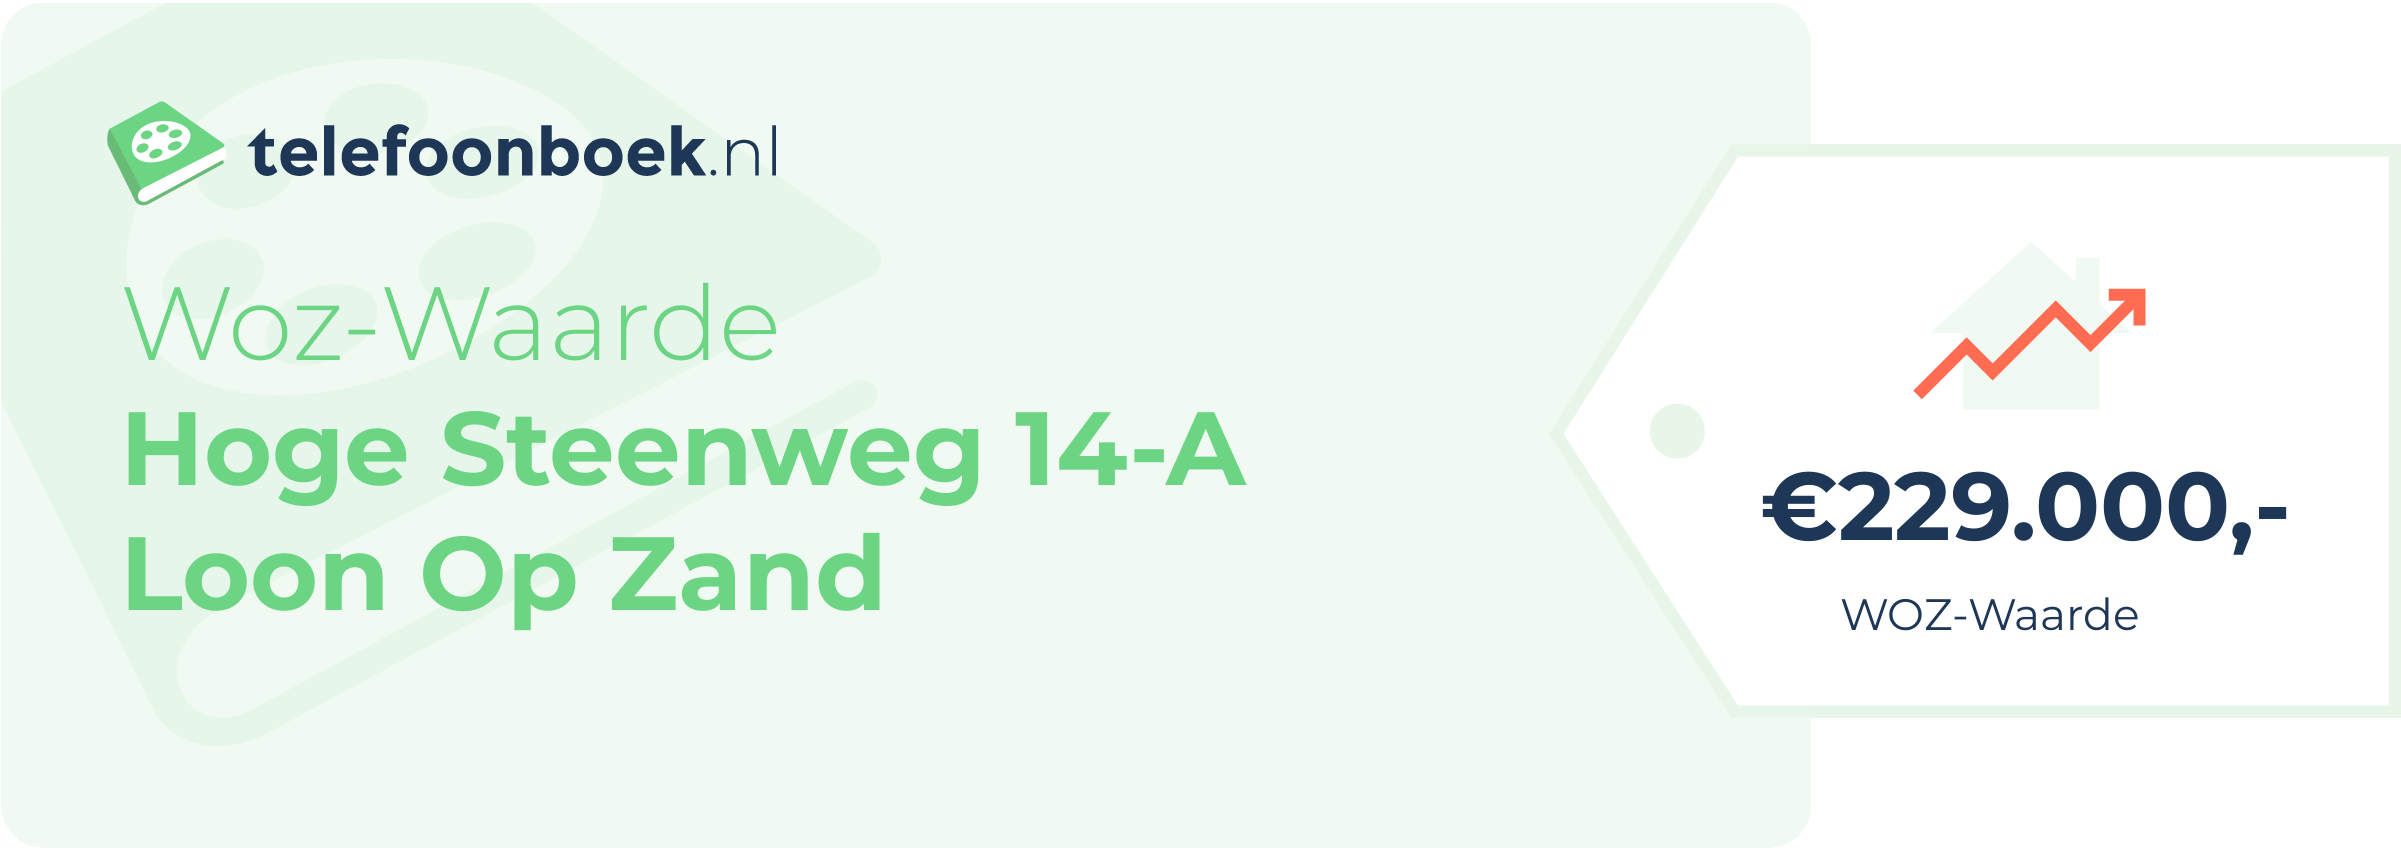 WOZ-waarde Hoge Steenweg 14-A Loon Op Zand